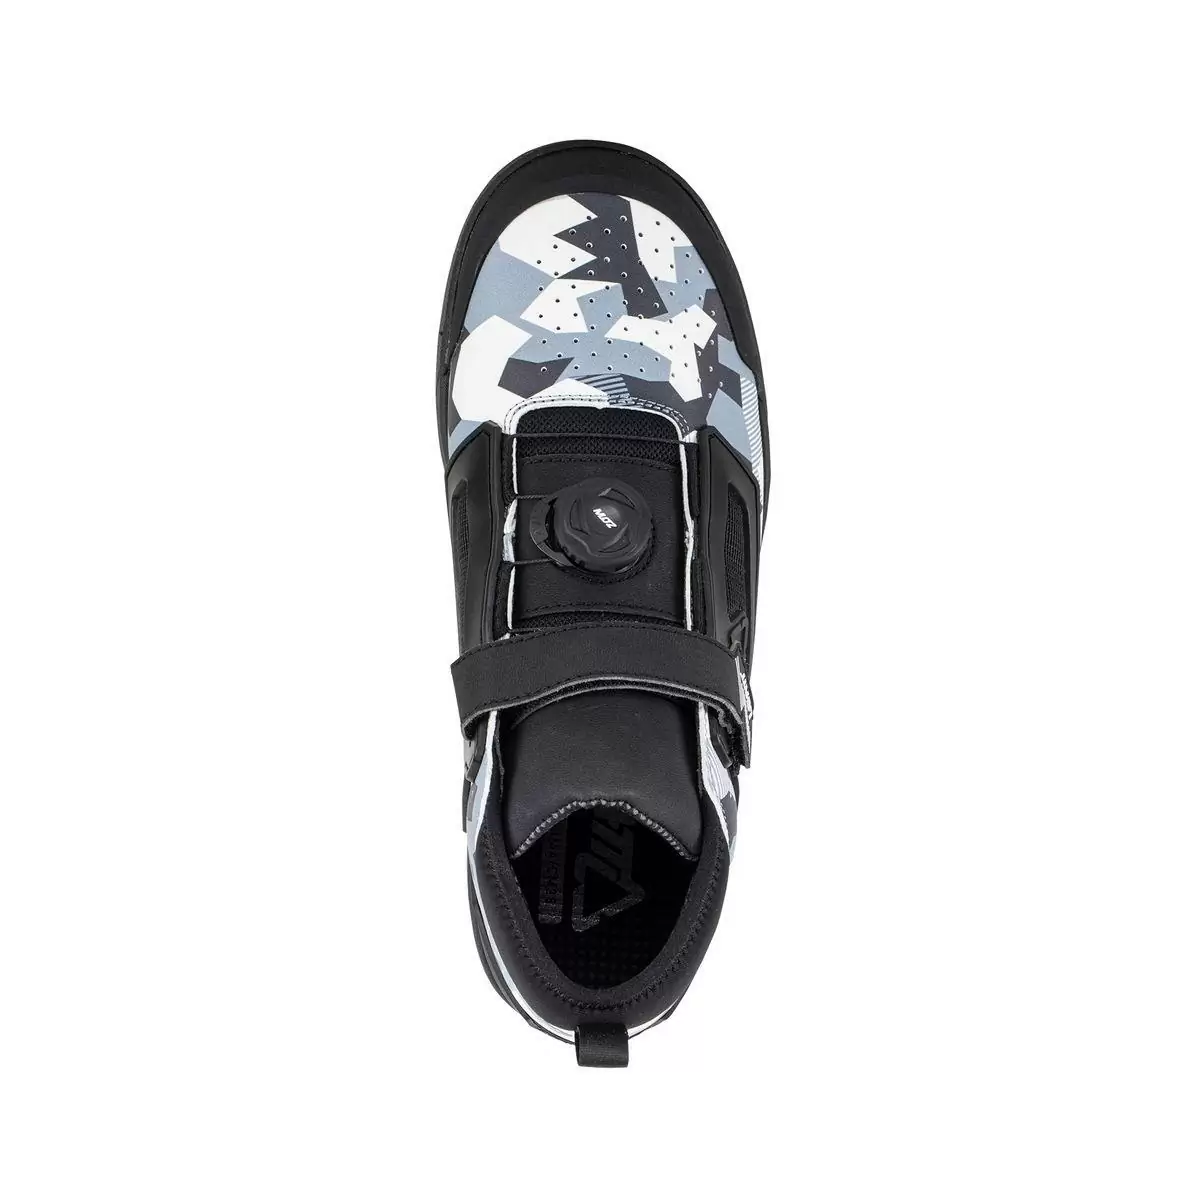 Chaussures VTT 3.0 Flat Pro Blanc/Noir Taille 44.5 #2